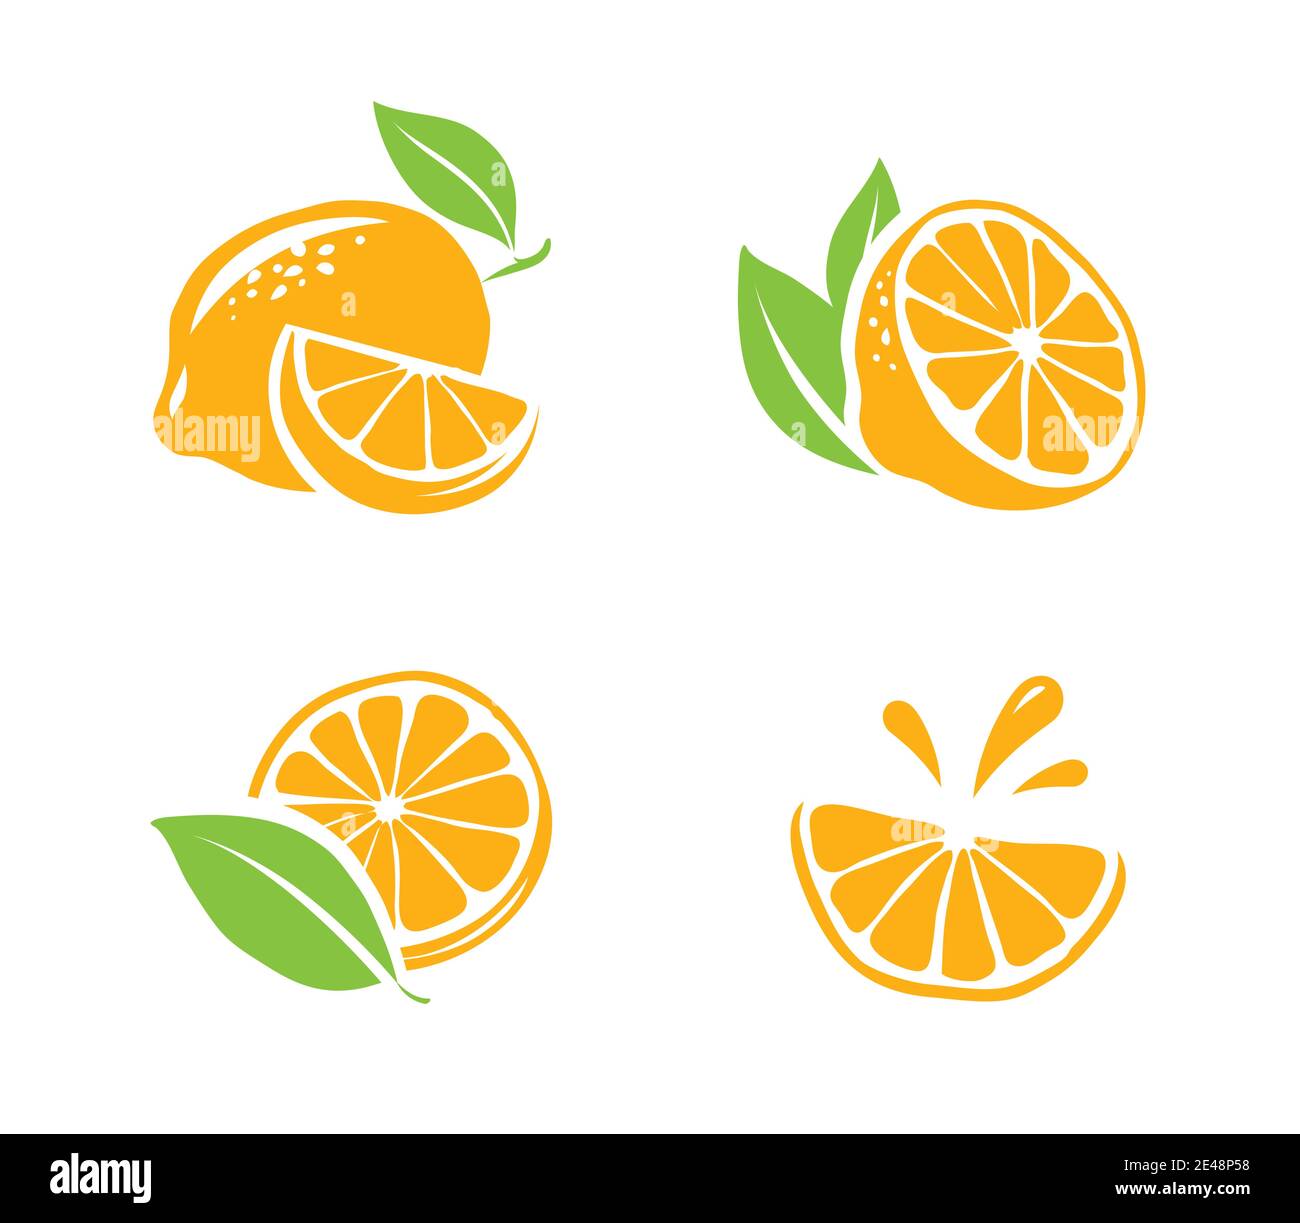 Zitrone isoliert auf weißem Hintergrund. Obst-Symbole setzen Vektor-Illustration Stock Vektor